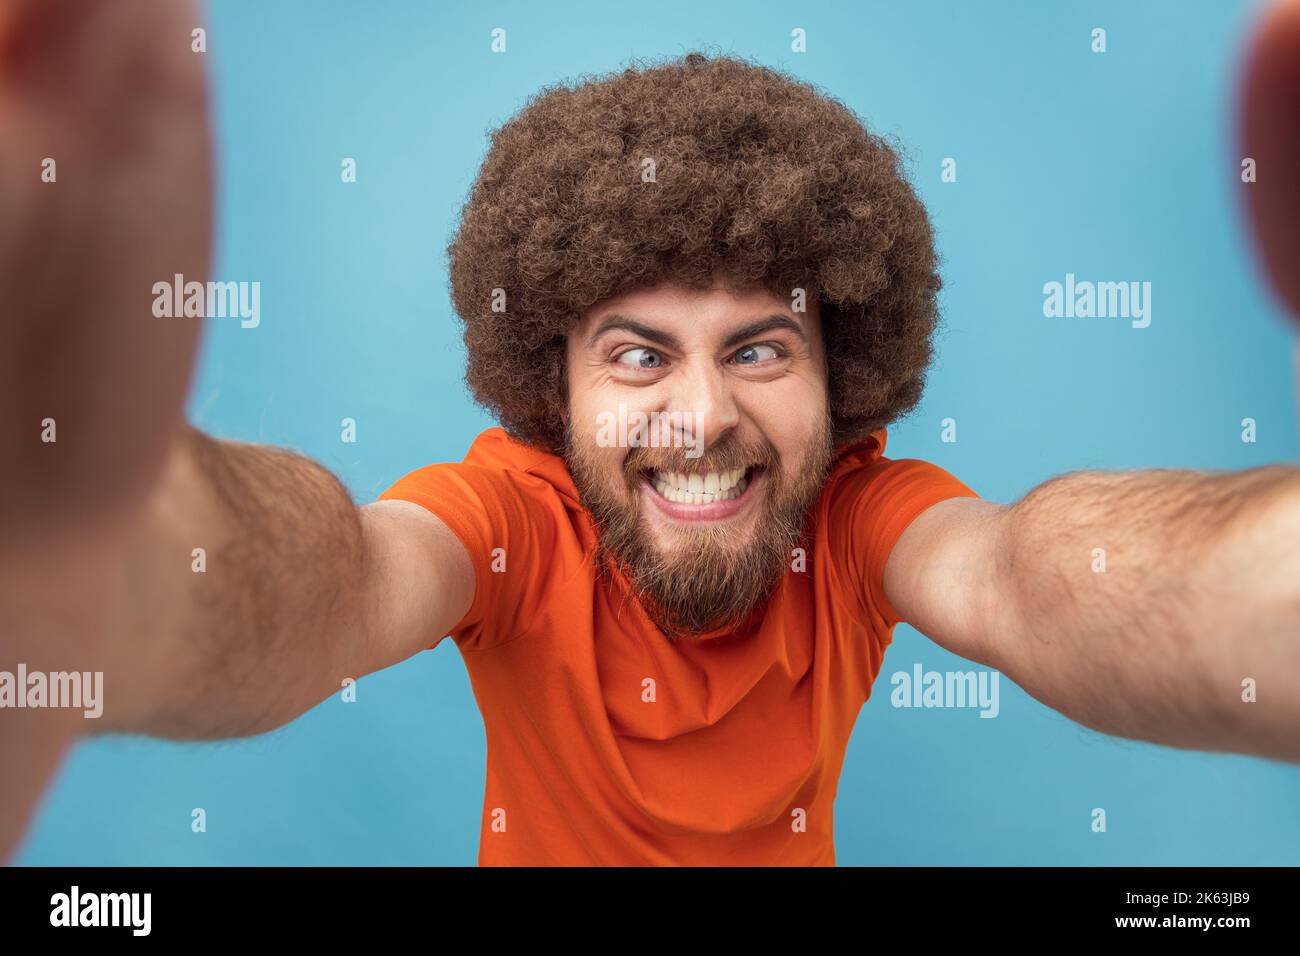 Porträt eines verrückten albernen Mannes mit Afro-Frisur in orangefarbenem T-Shirt, der Livestream überträgt, Spaß mit Abonnenten hat, mit gekreuzten Augen posiert, POV. Innenaufnahme des Studios isoliert auf blauem Hintergrund. Stockfoto